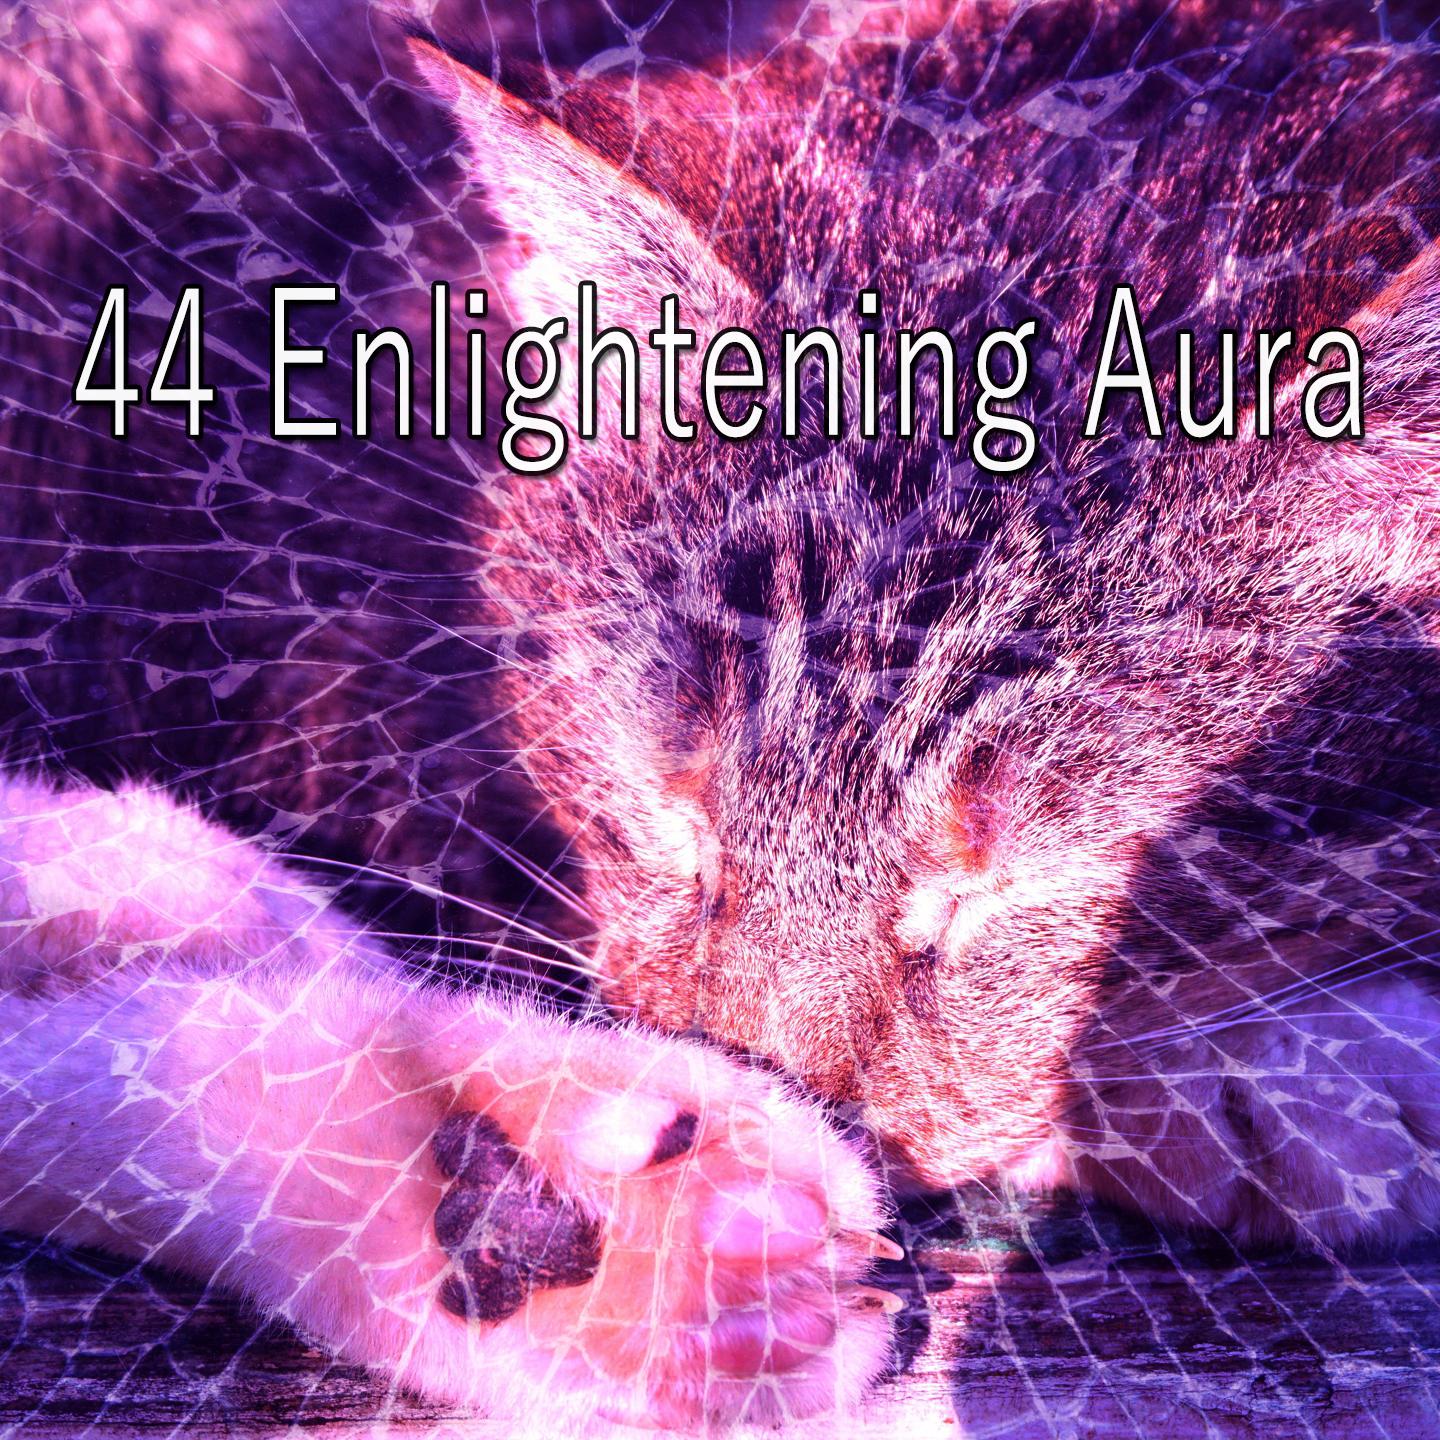 44 Enlightening Aura